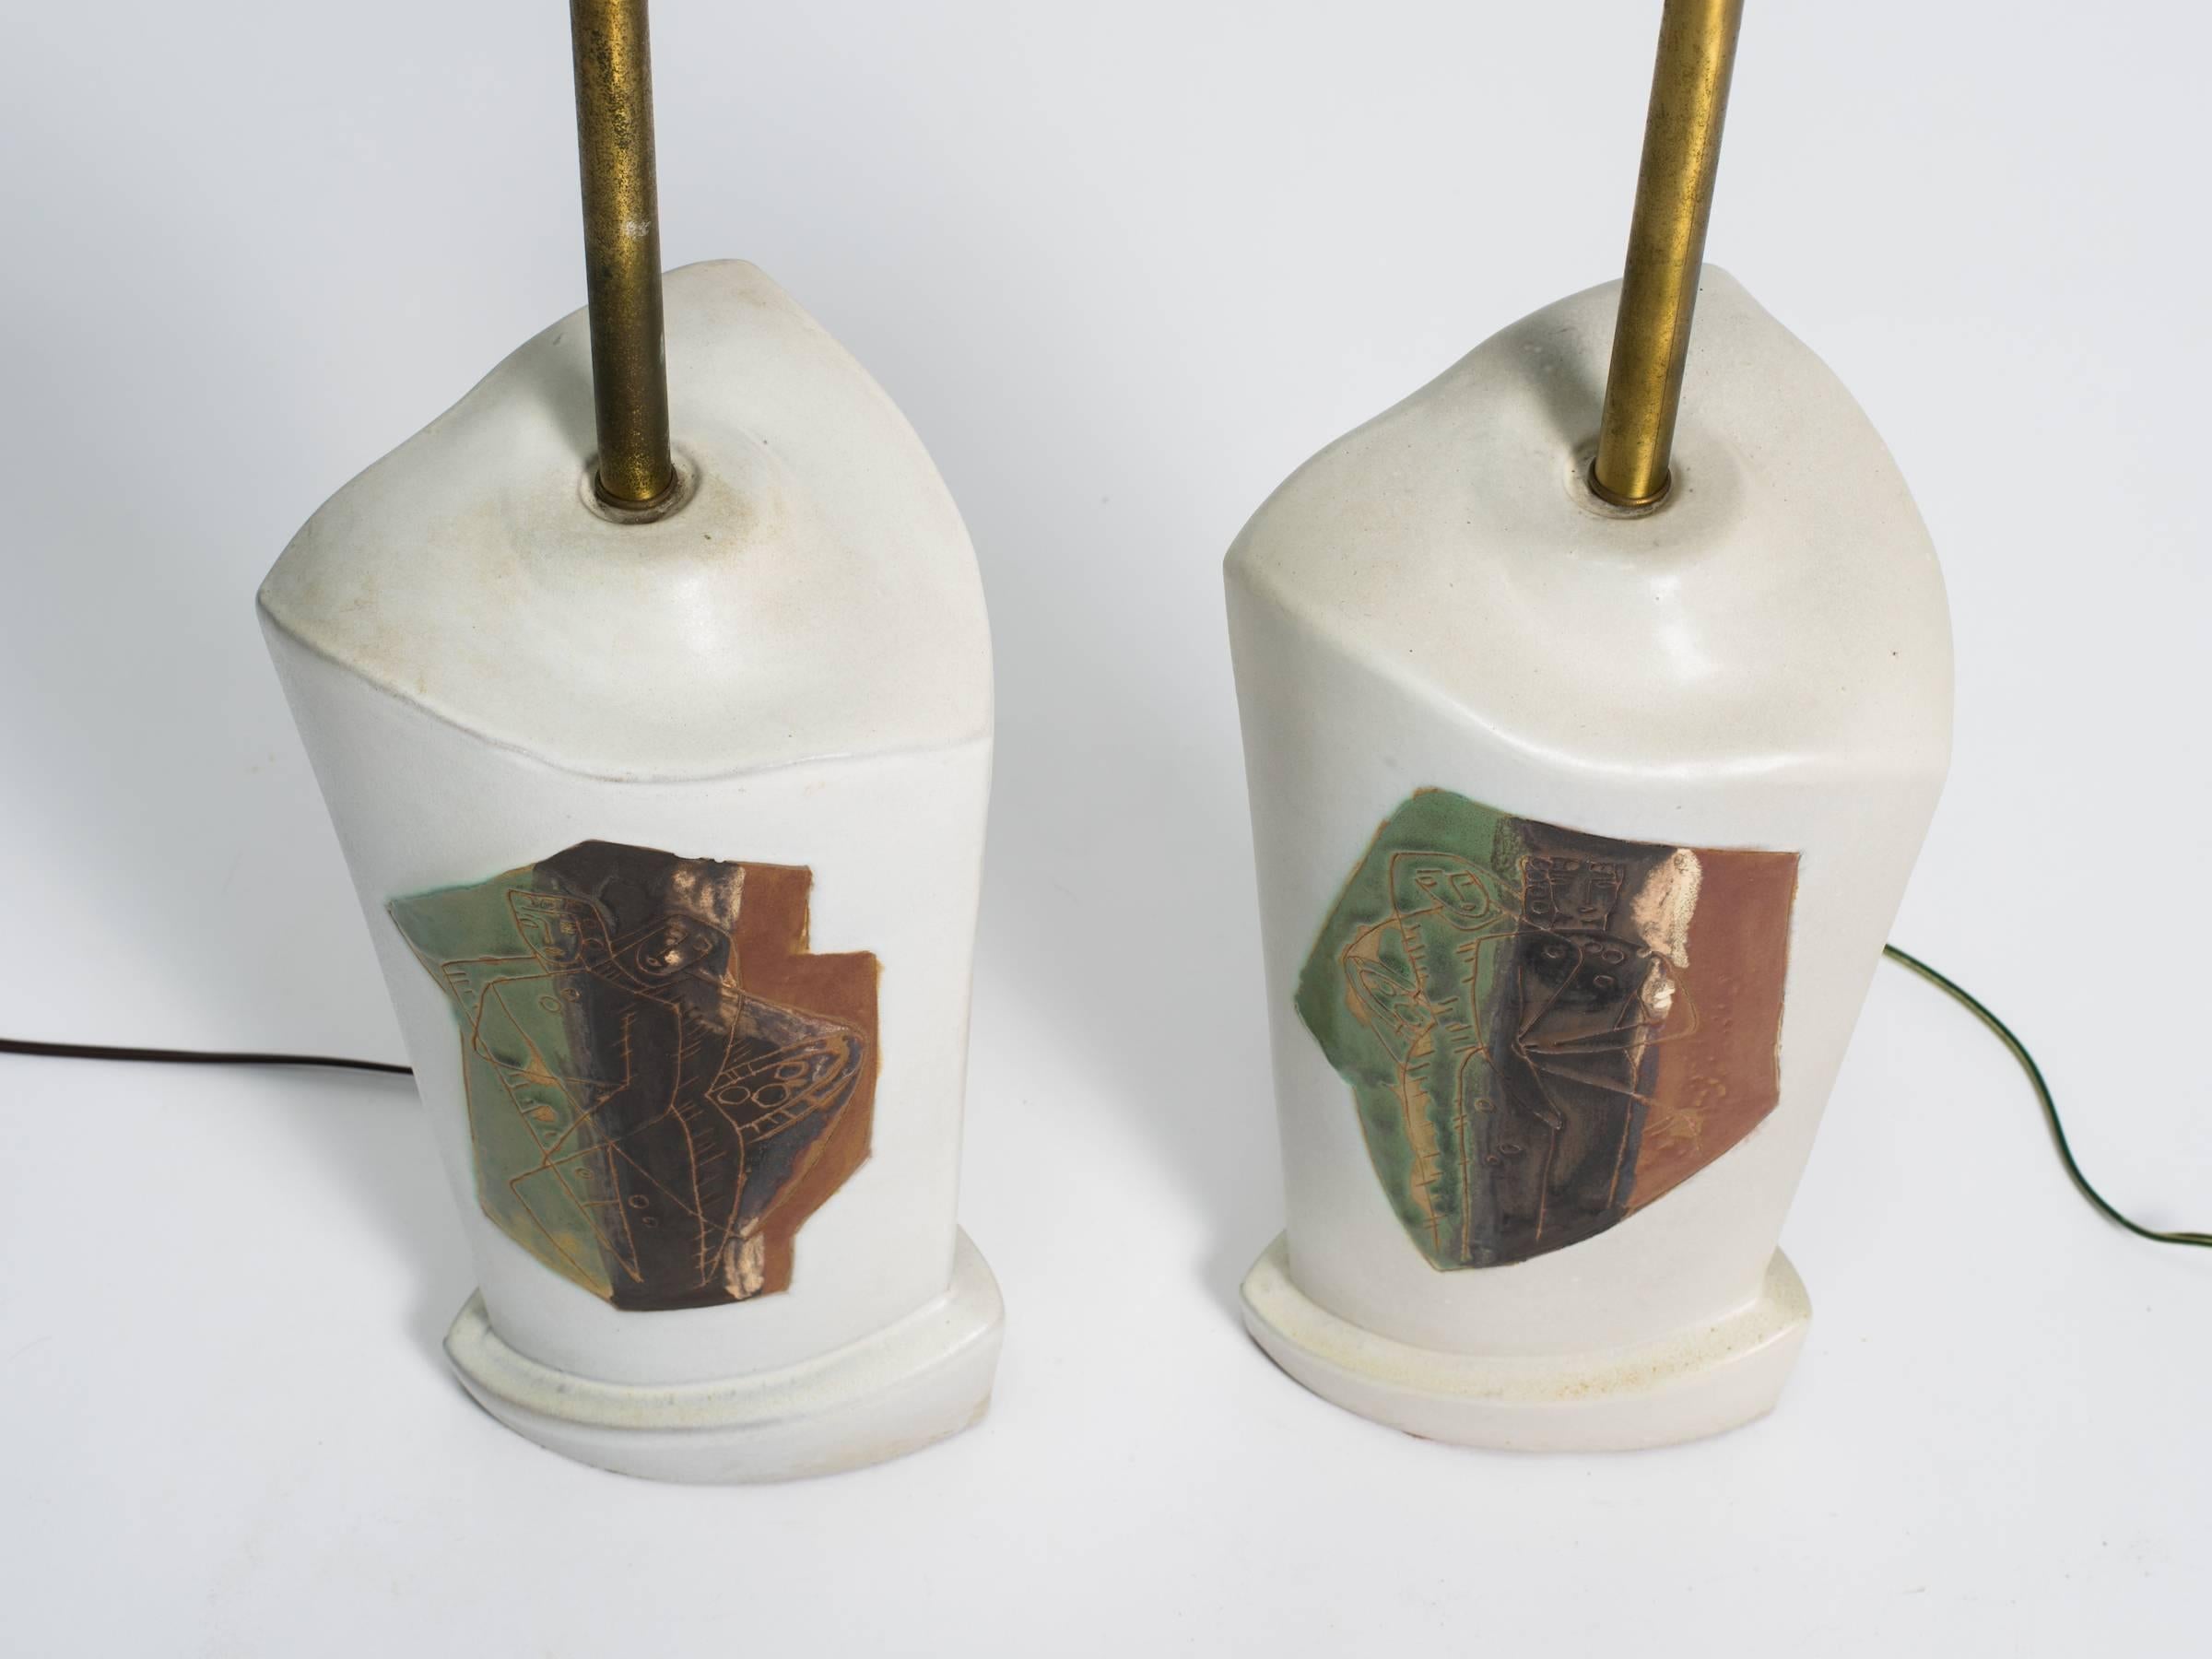 Paar Marianna von Allesch-Keramiklampen aus den 1950er Jahren mit abstraktem, figurativem Design.

Die Messungen beziehen sich auf die Oberseite des Sockels.